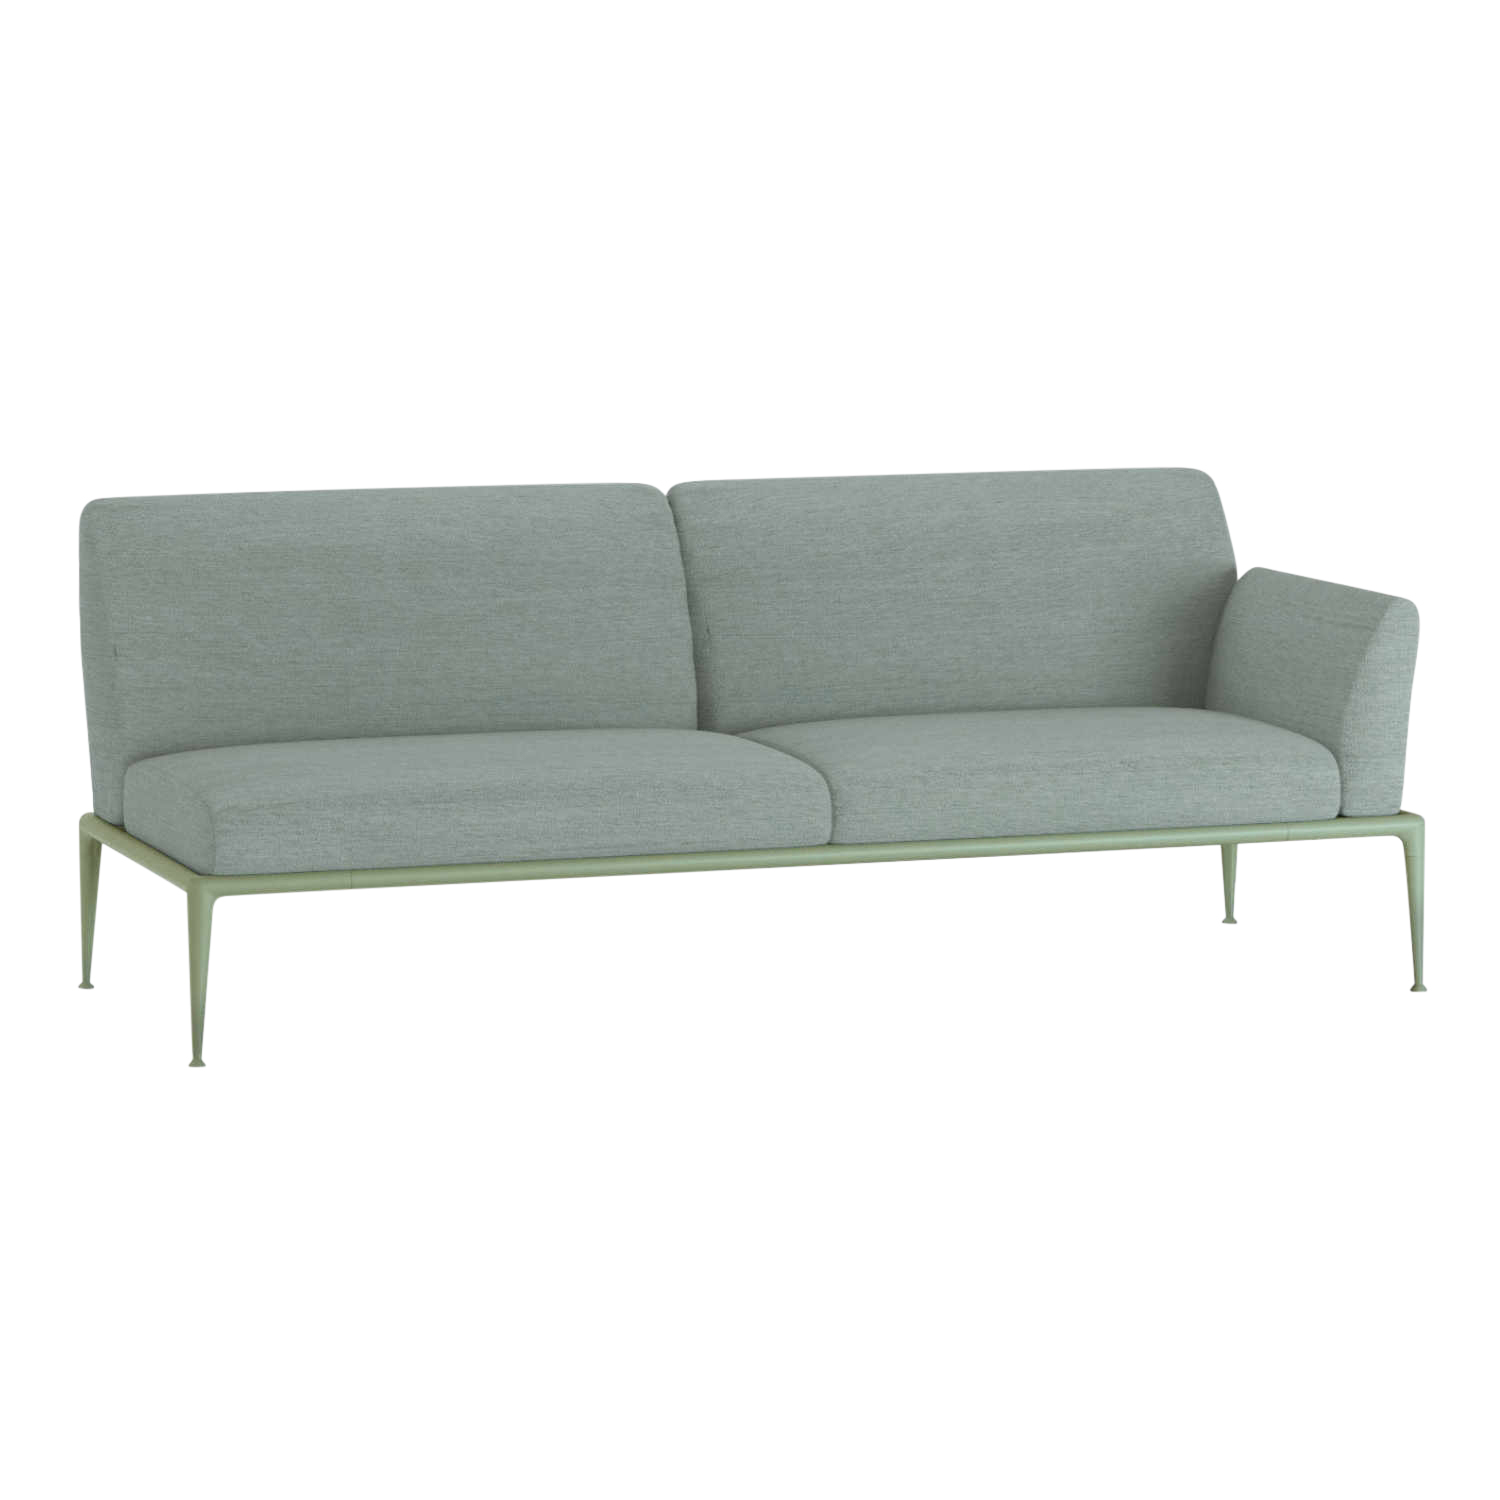 New Joint 3er Sofa, Ausführung armlehne links/sitzend rechts, Stoff range 1 solids, black (schwarz), Gestell aluminium lackiert, white (weiss) von FAST